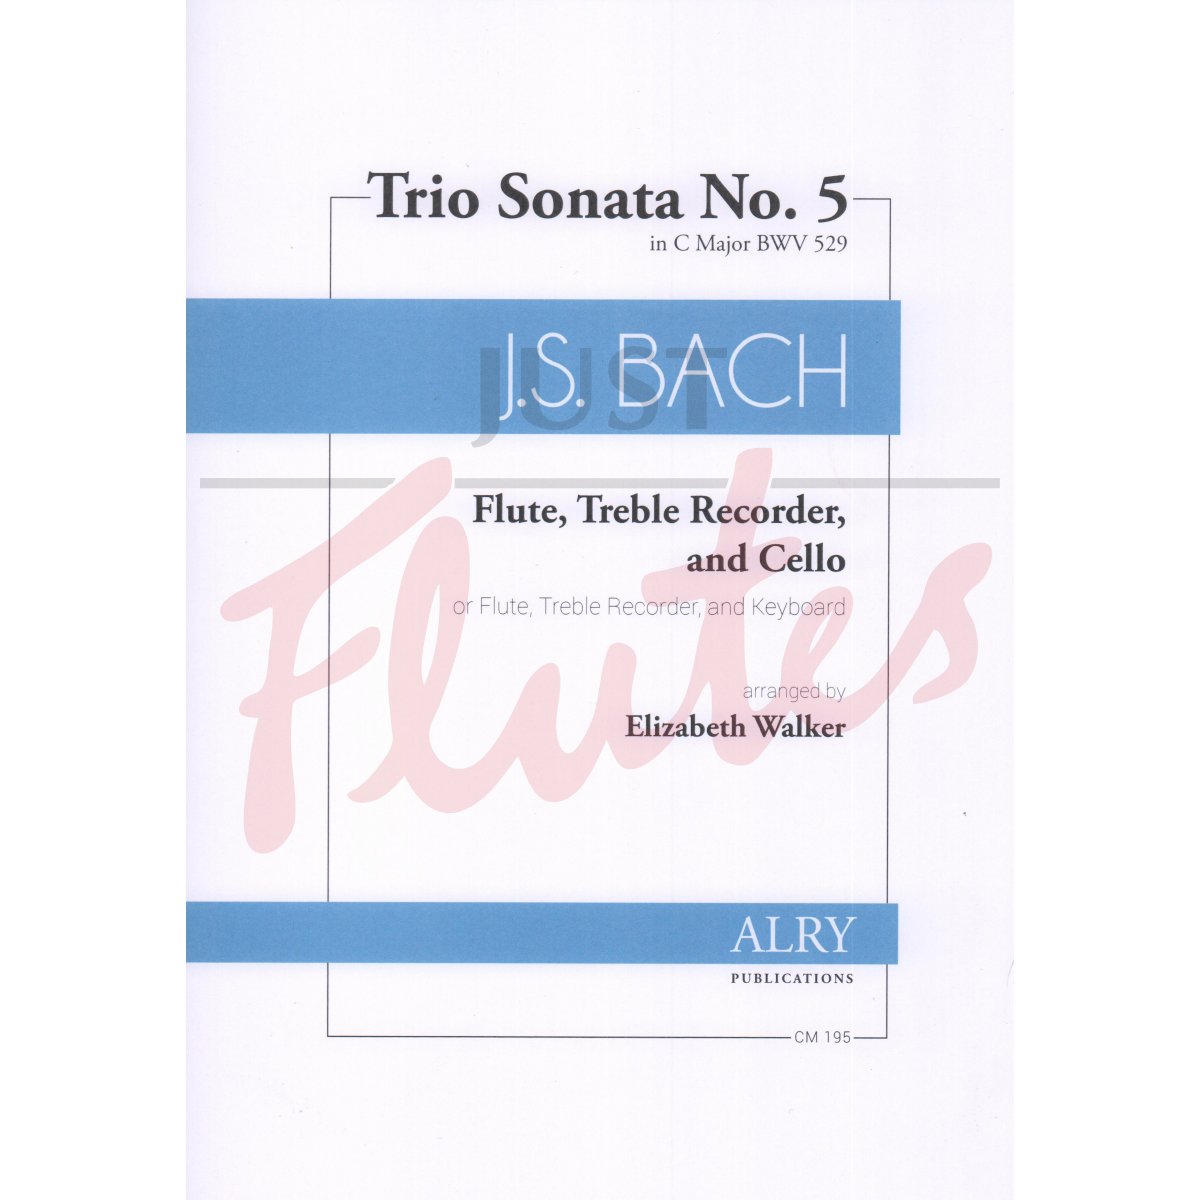 Trio Sonata No. 5 in C major for Flute, Treble Recorder, and Cello (or Keyboard)